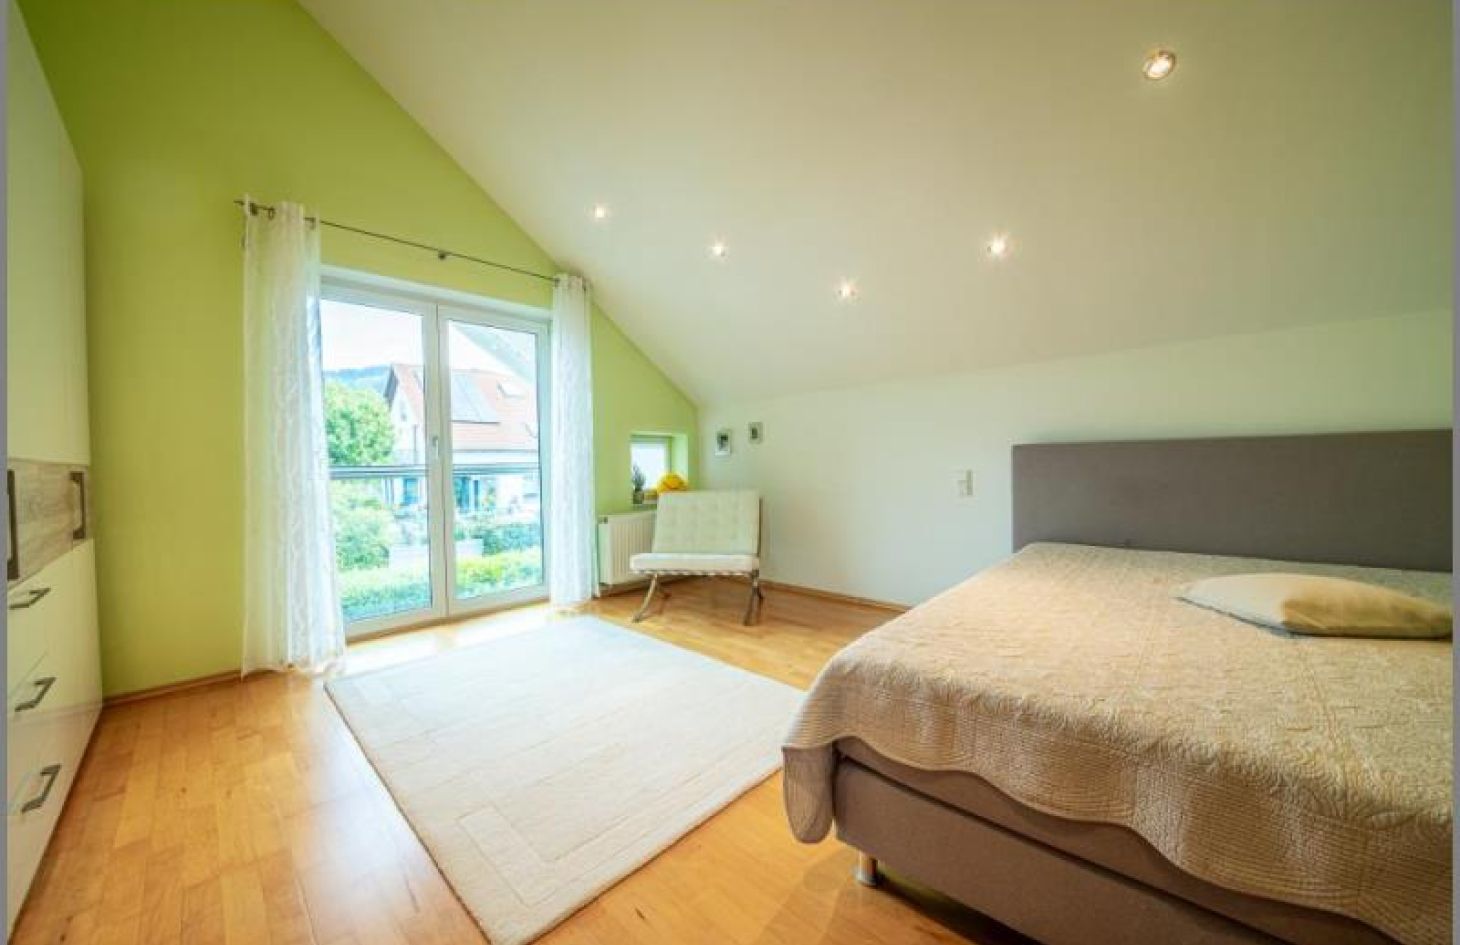 DG Schlafen Beispiel von Schicker Wohntraum in Grün! Modernes Einfamilienhaus in ruhiger Lage! in Bühl bei Dhonau Immobilien-Makler Ortenau